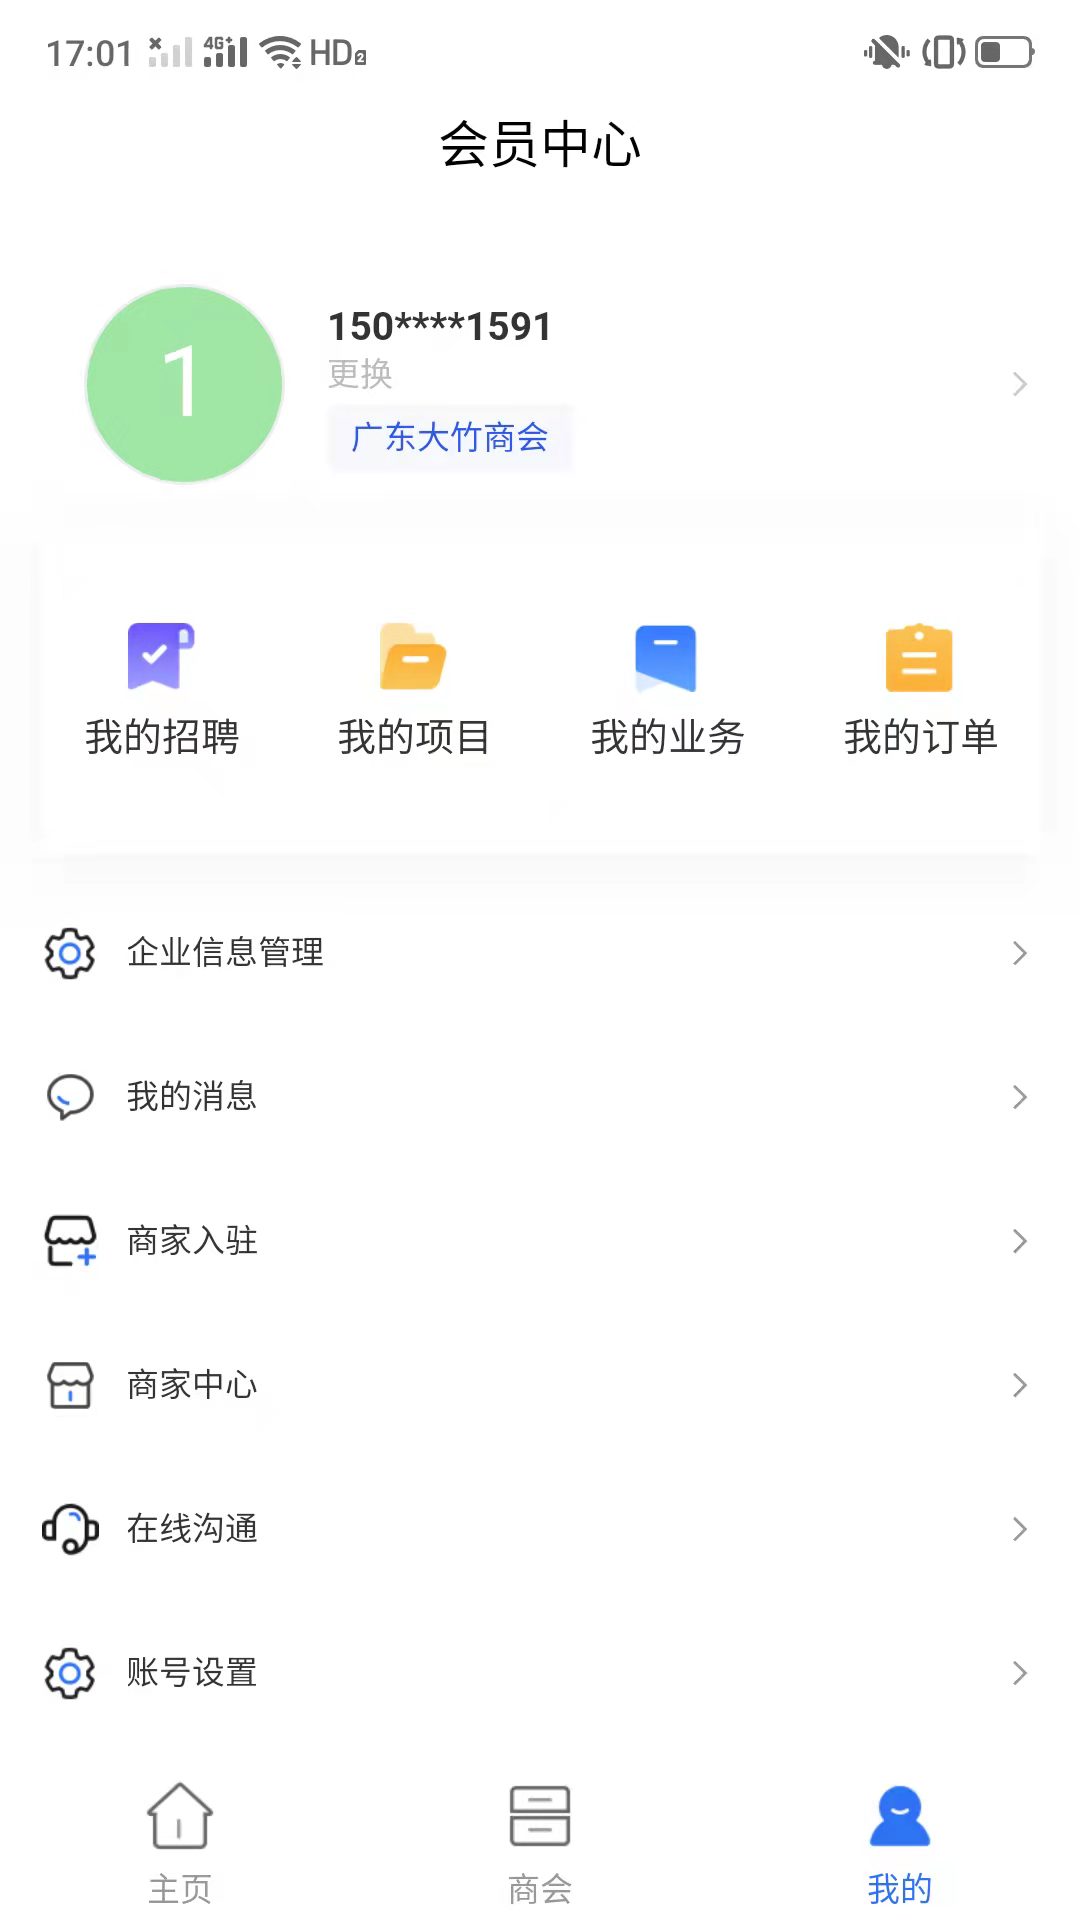 大竹商会创业资讯app手机版 v1.0.3